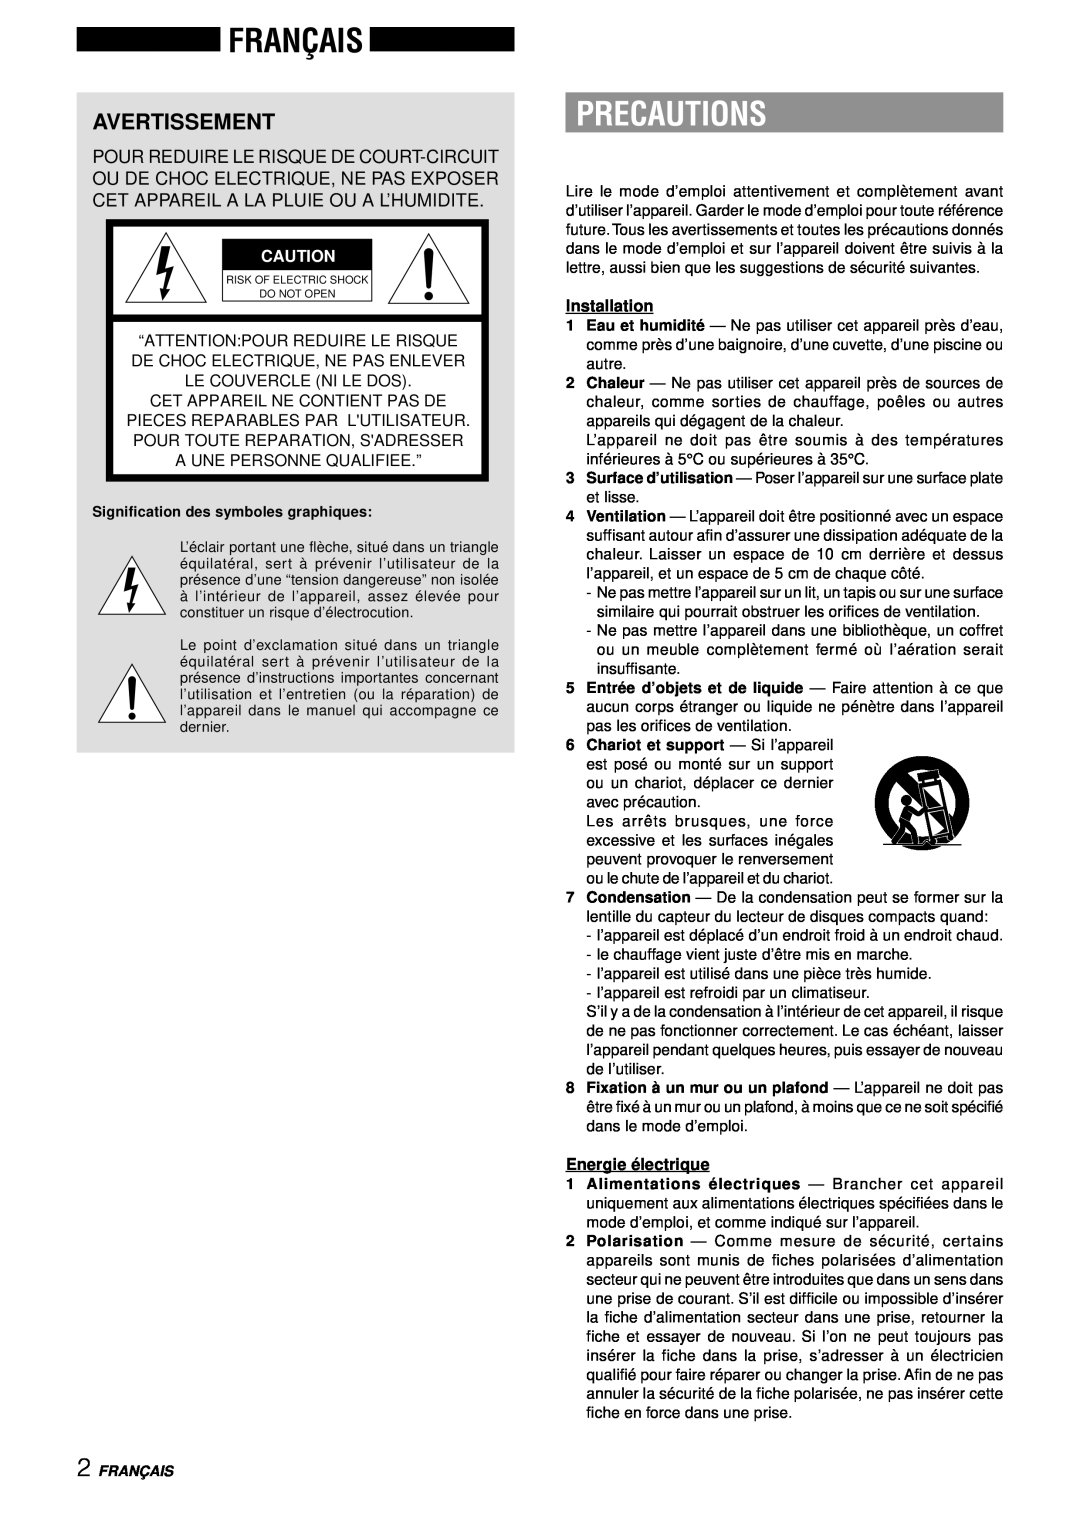 Aiwa NSX-AJ14 Français, Avertissement, Precautions, “Attention Pour Reduire Le Risque, De Choc Electrique, Ne Pas Enlever 